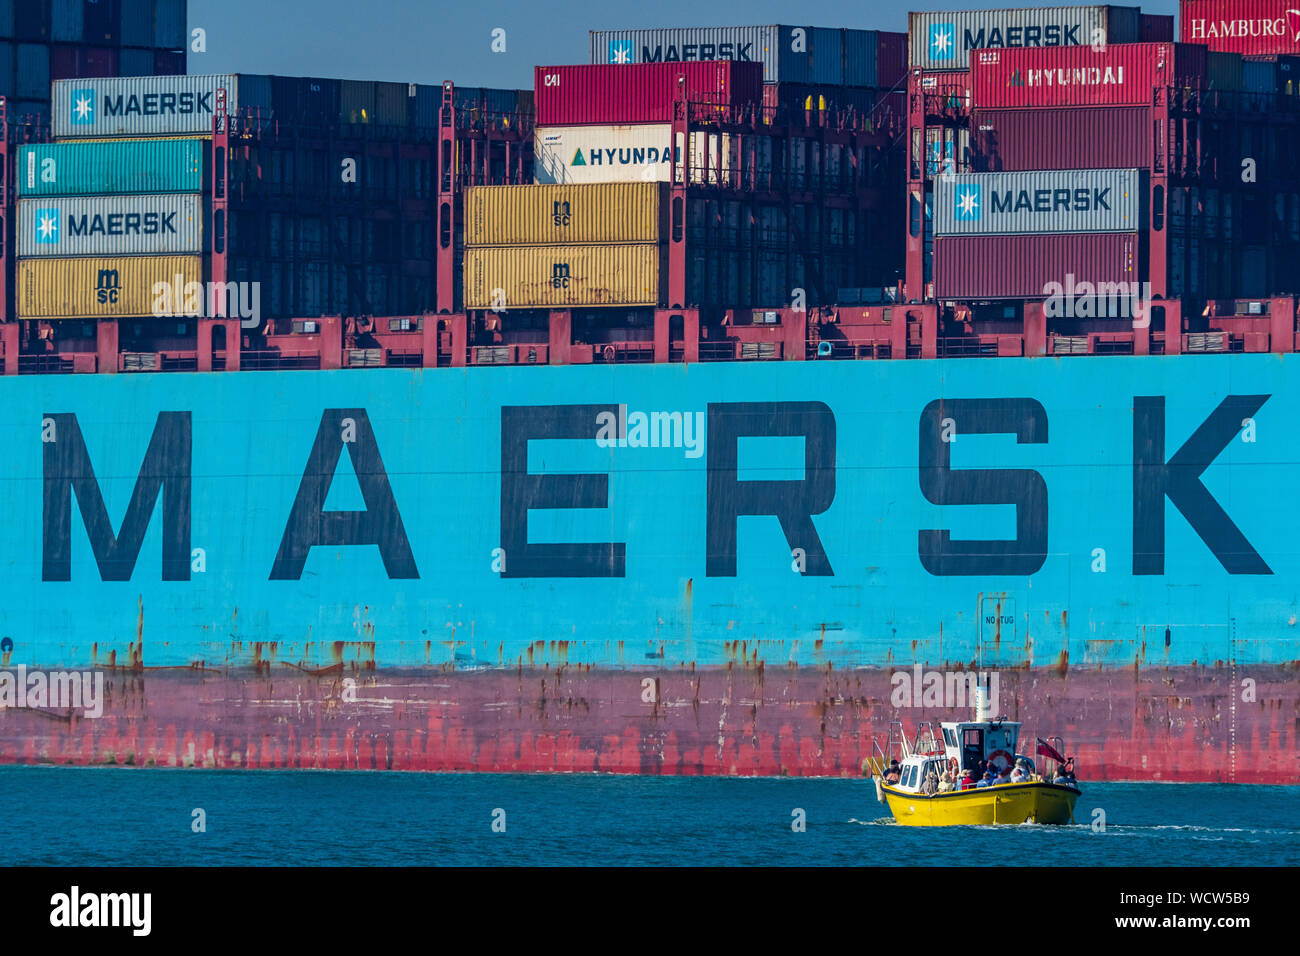 Maersk Line Containerschiff - Harwich Harbour Ferry passiert ein Maersk Containerschiff in den Hafen von Felixstowe in Ostengland. Stockfoto